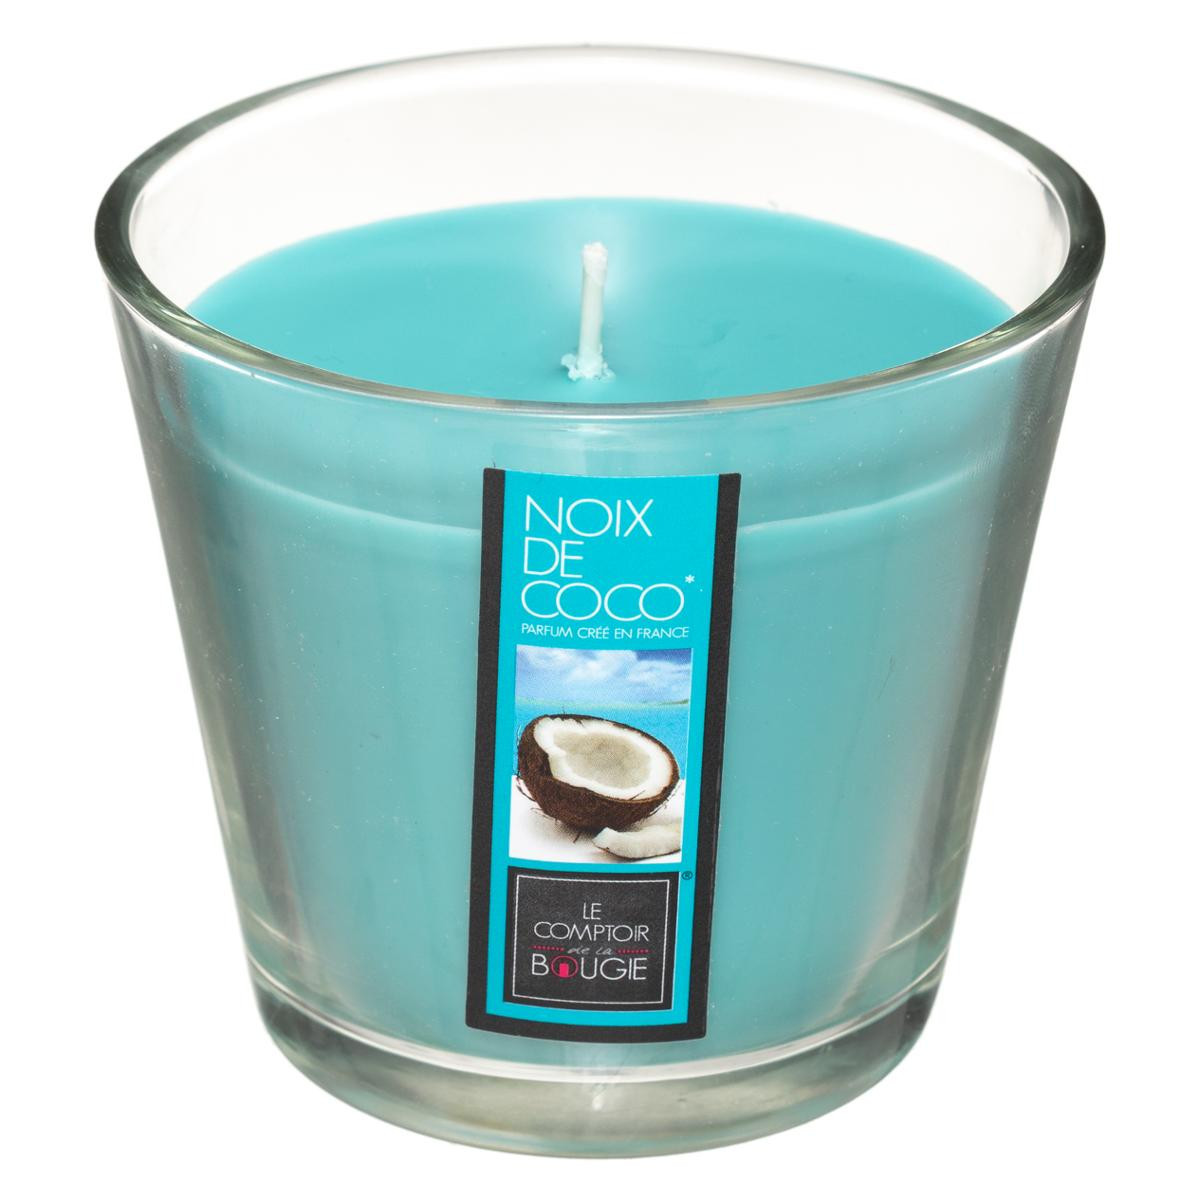 Bougies fragrances - Noix de coco - Coco câline - Noix de coco - Les  Romanaises